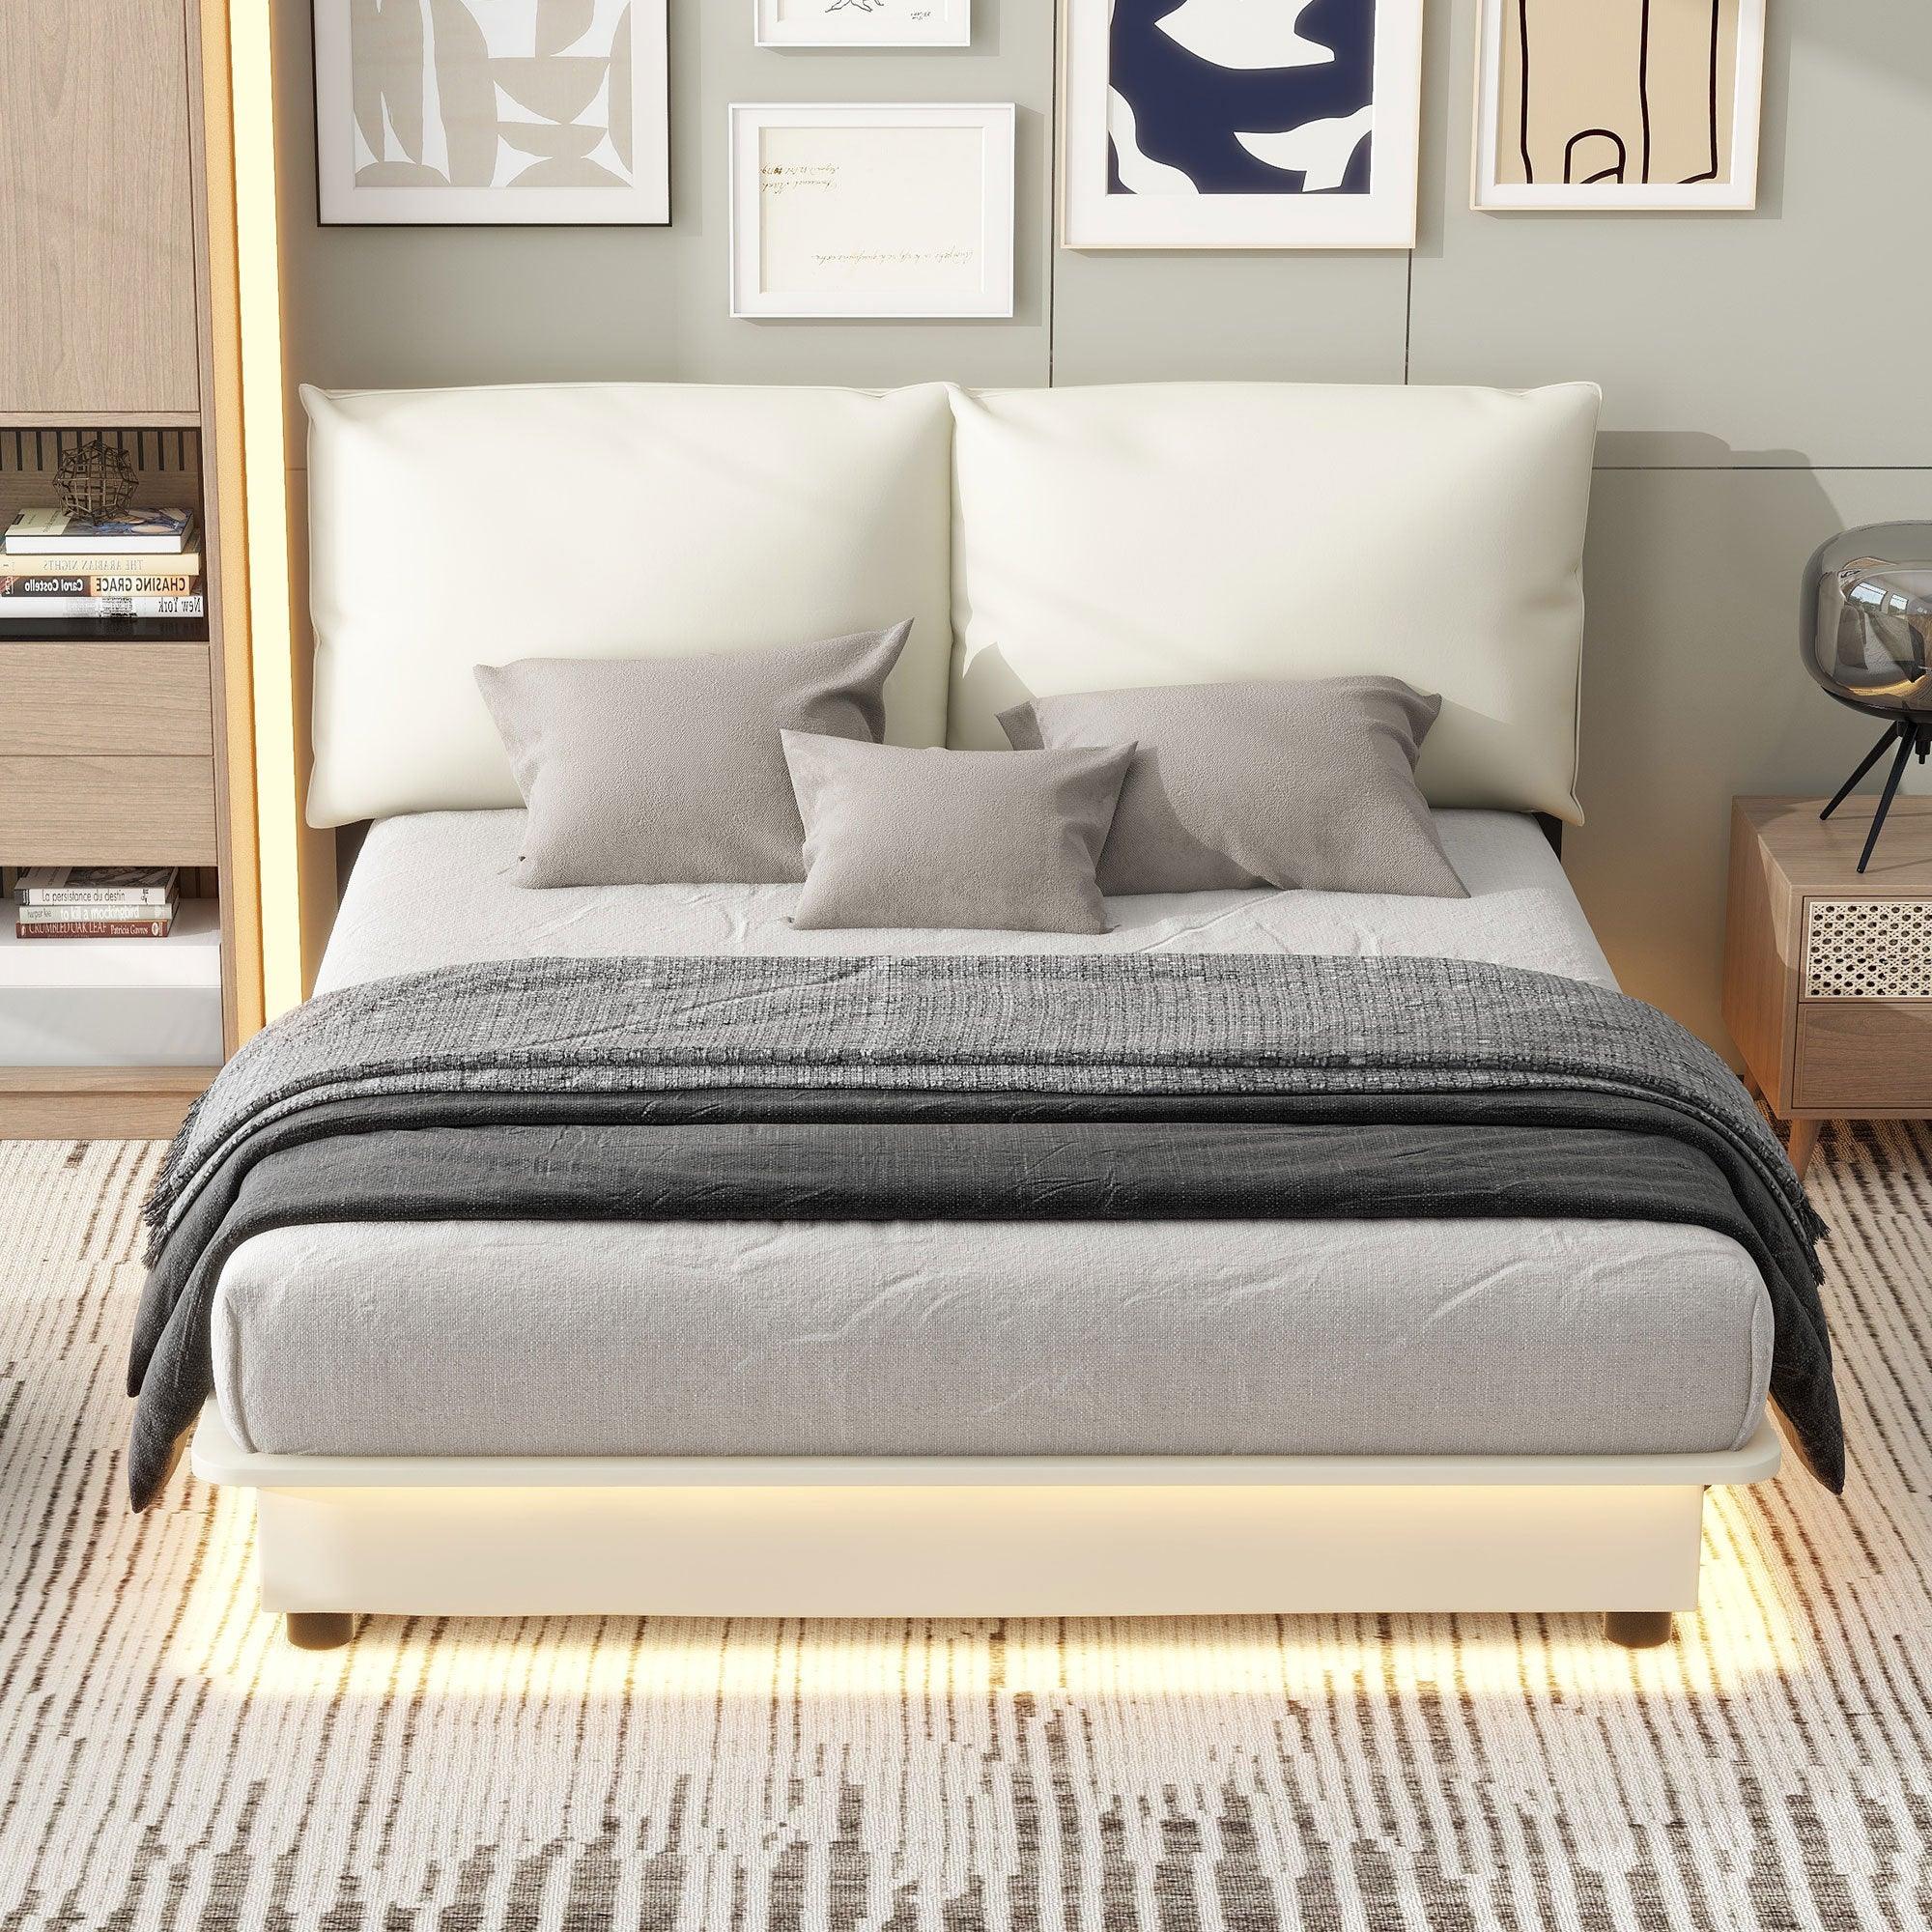 🆓🚛 Queen Size Upholstered Platform Bed With Sensor Light & Ergonomic Design Backrests, White